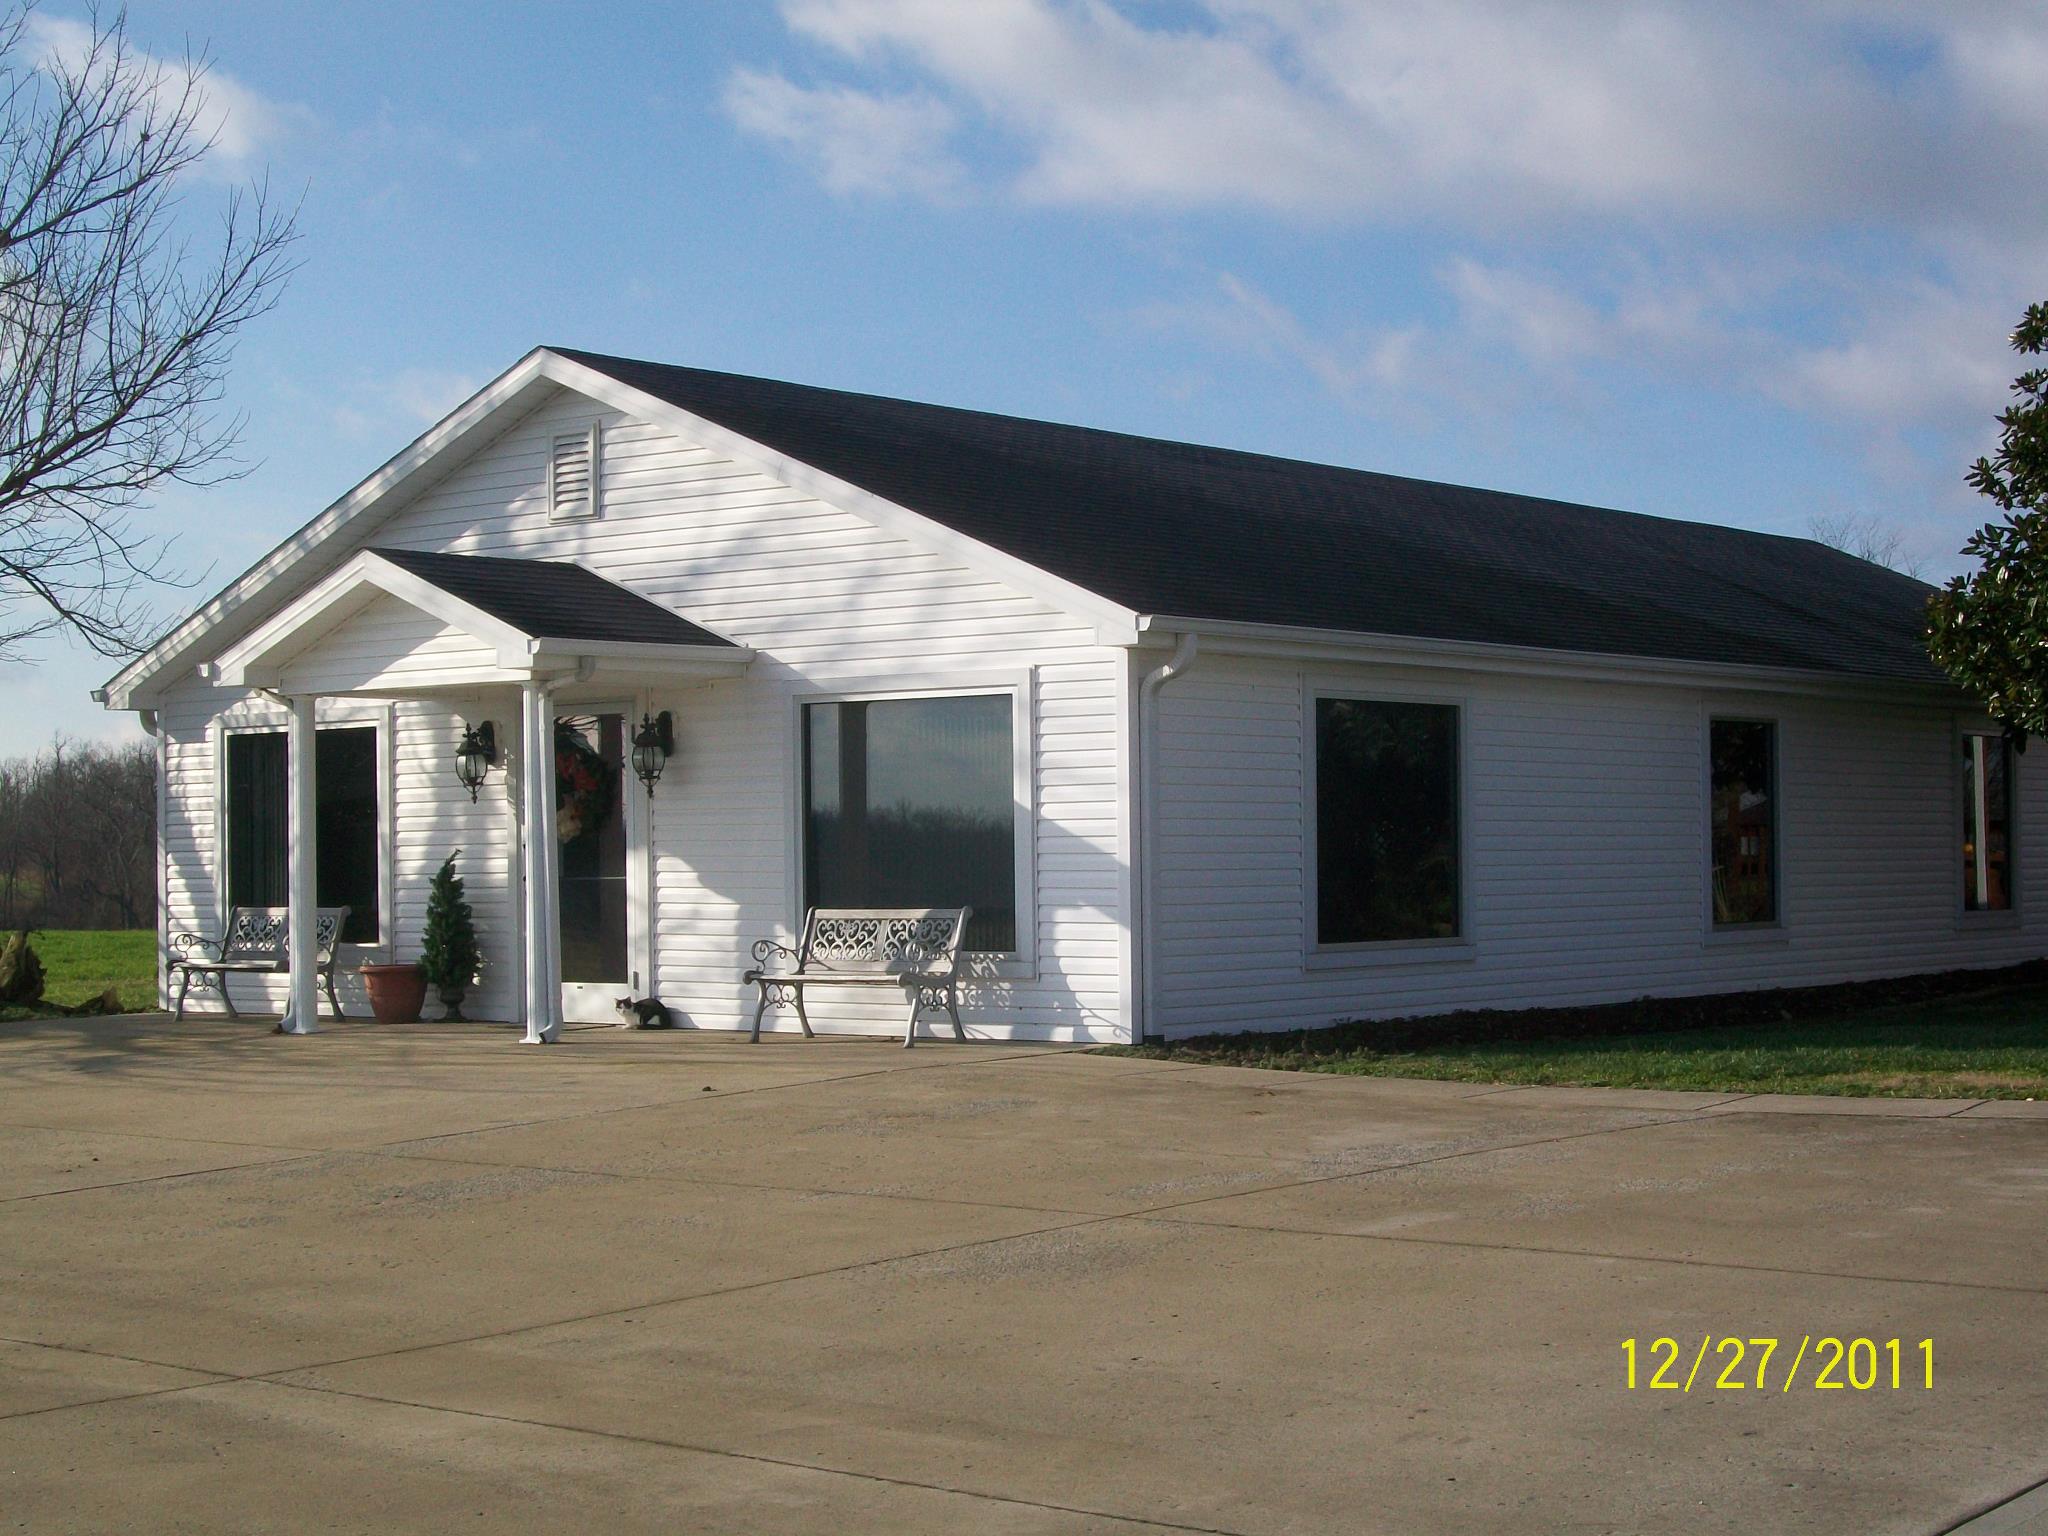 B & W Tax Services 632 Richmond Rd, Lancaster Kentucky 40444